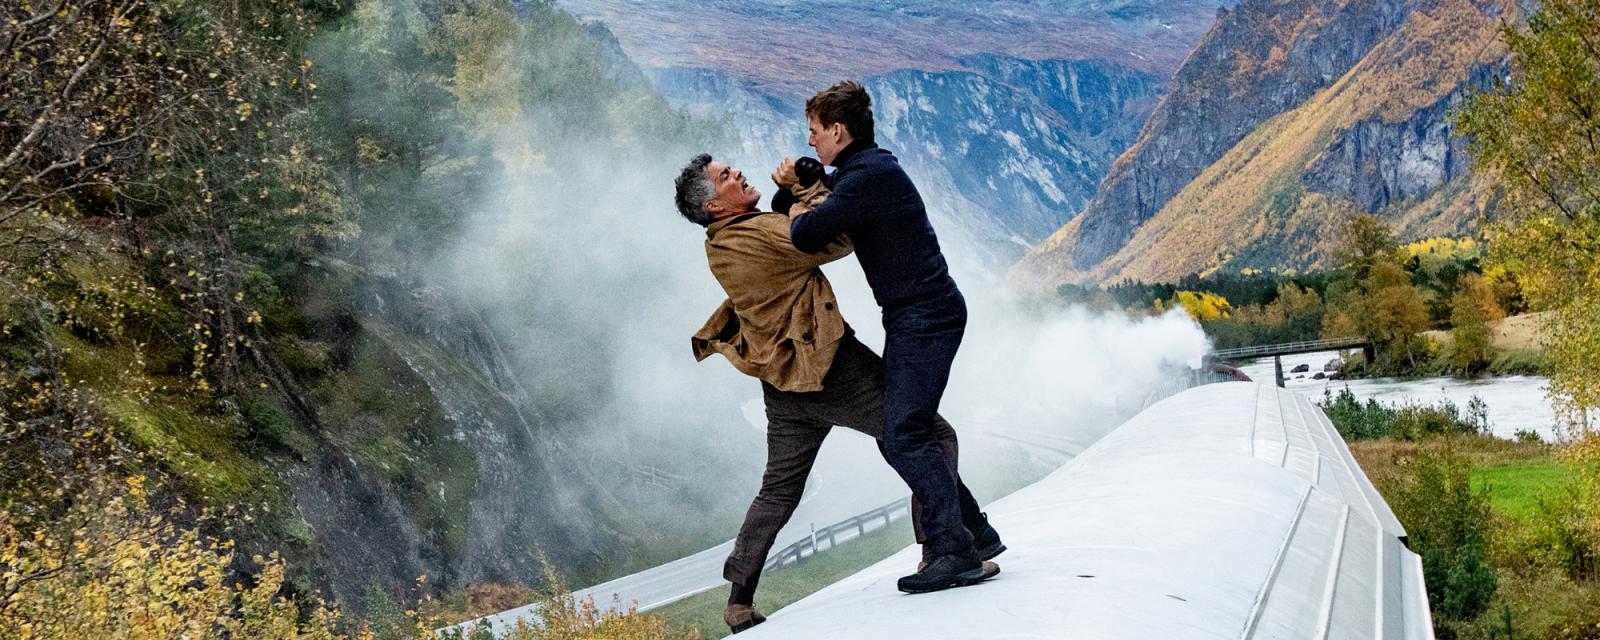 Fjord Noorwegen decor van nieuwste Mission Impossible film 